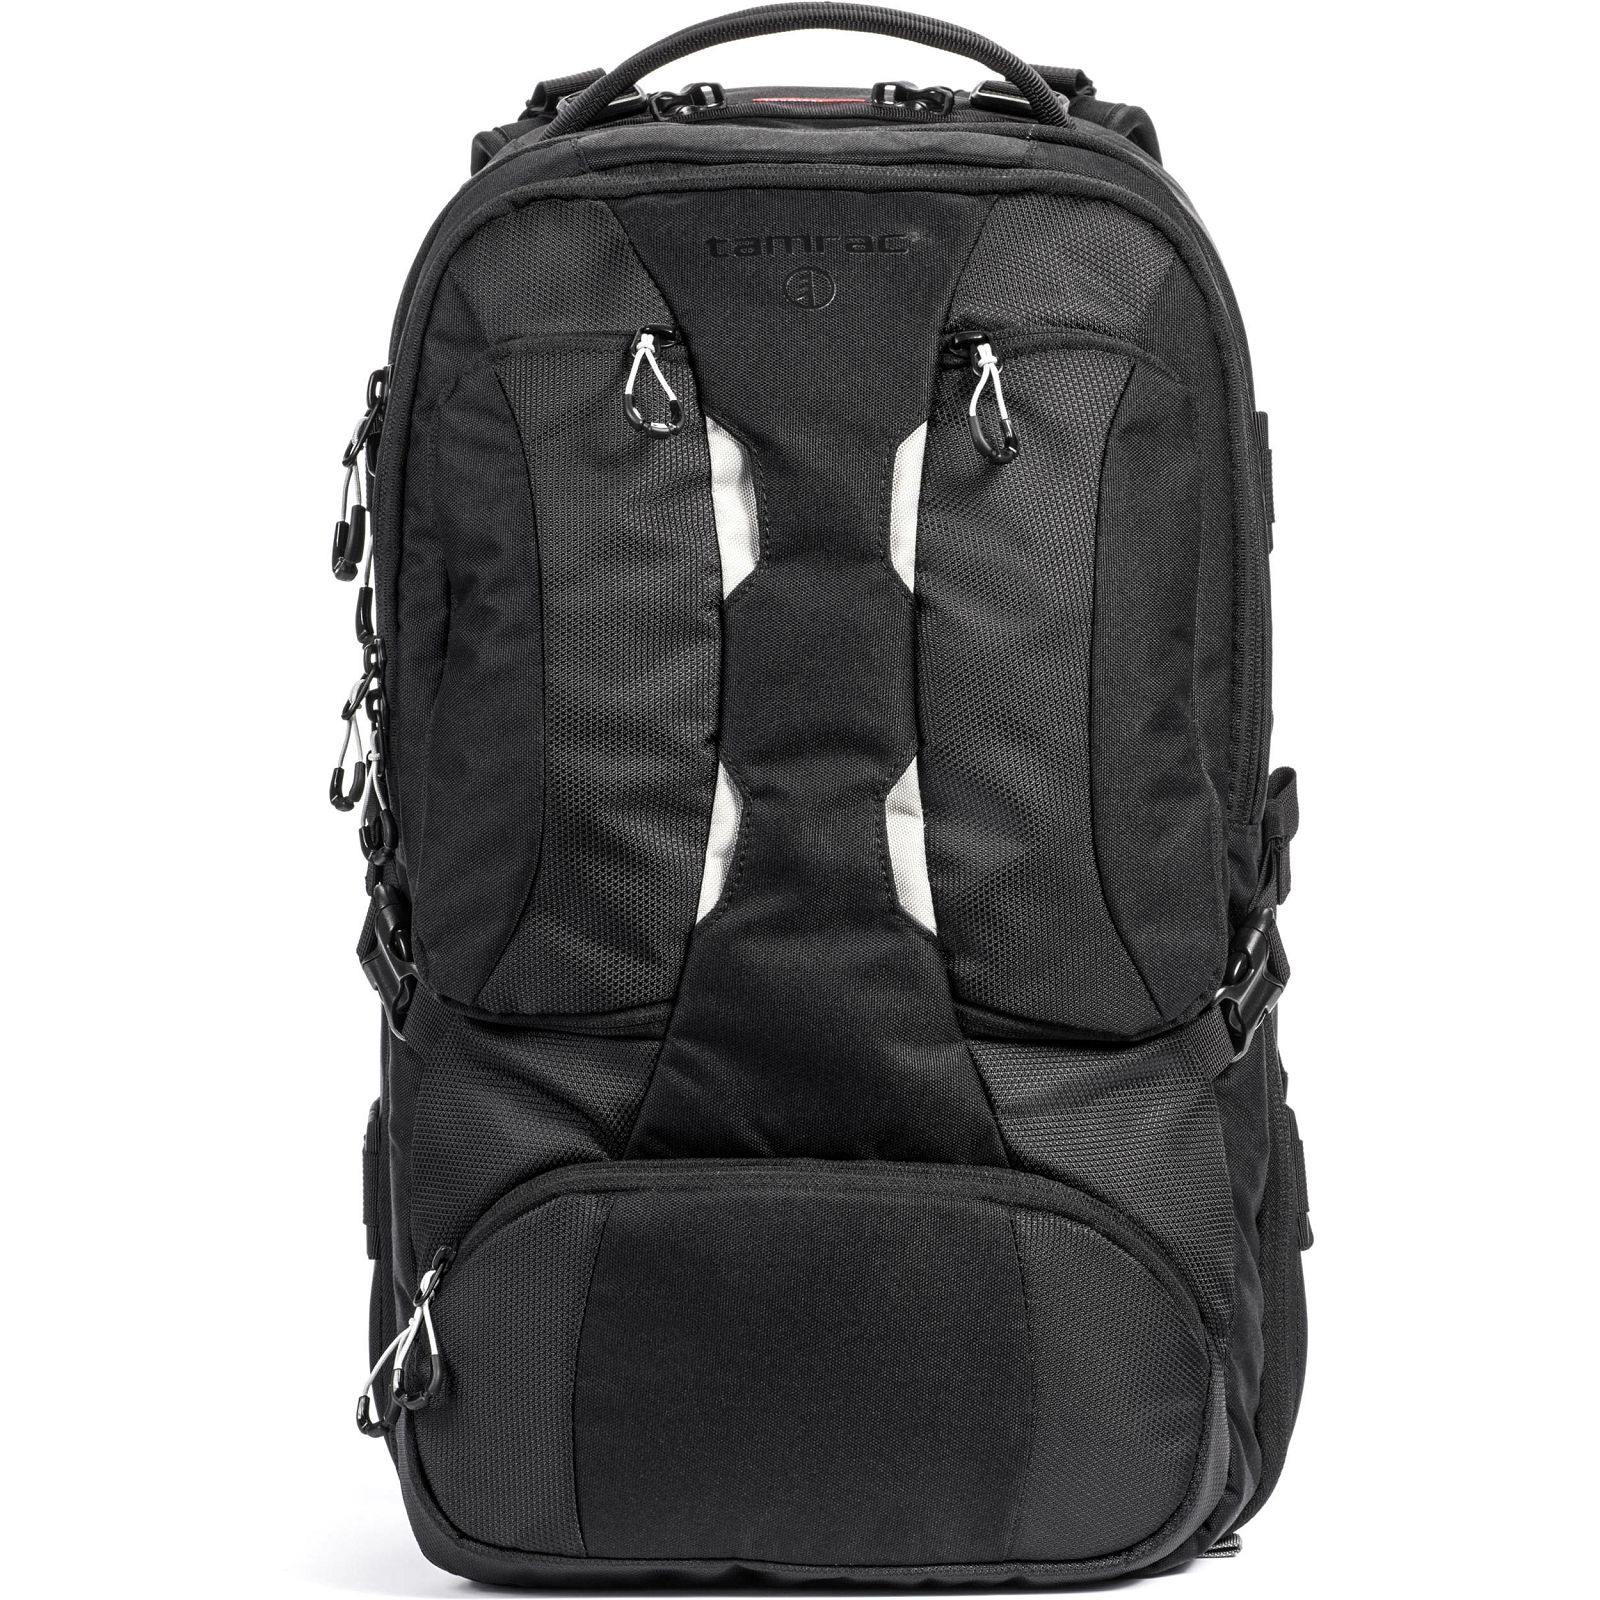 Tamrac Anvil 27 Backpack Black crni ruksak za foto opremu (T0250-1919)